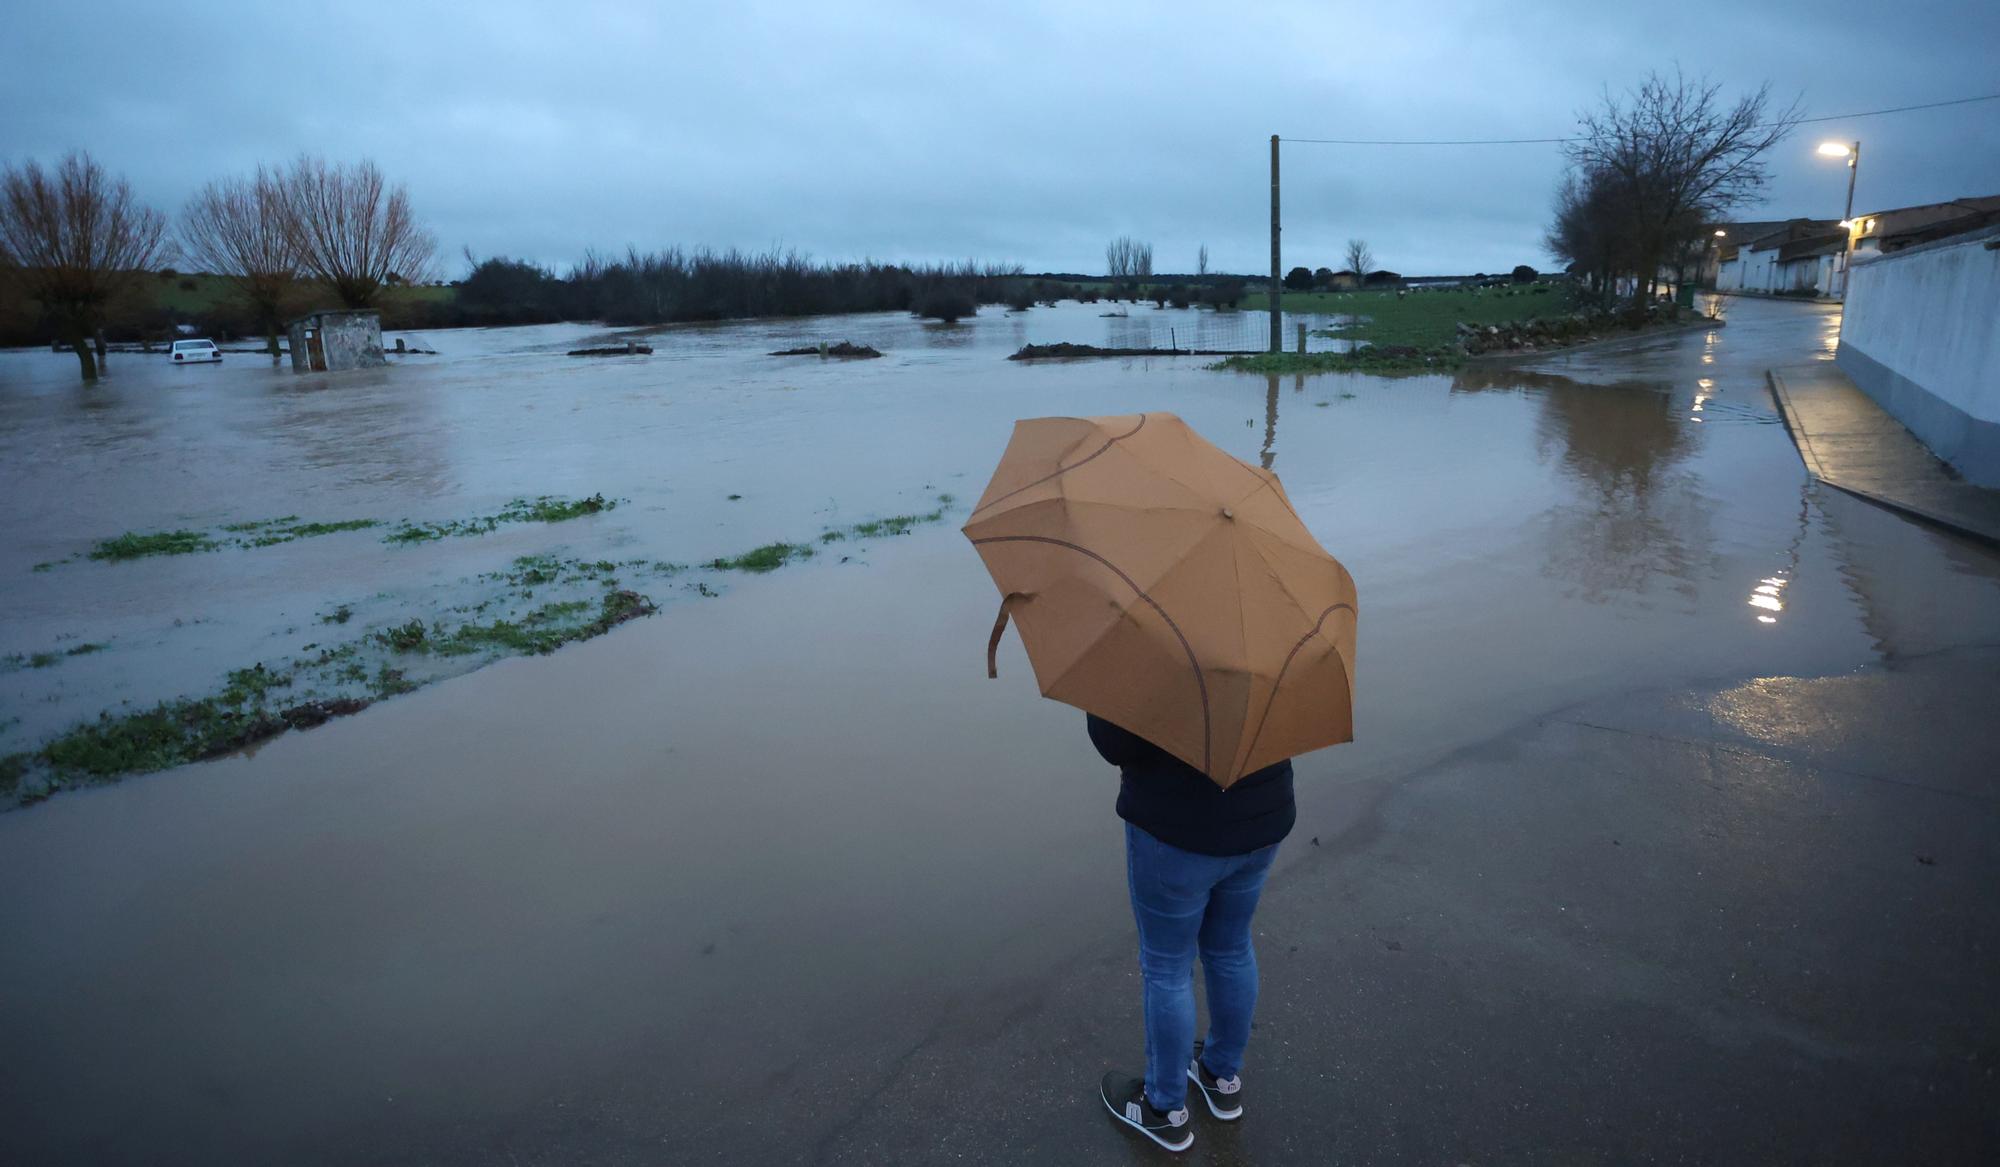 Las intensas lluvias ponen en jaque a Salamanca: varios rescates por inundaciones